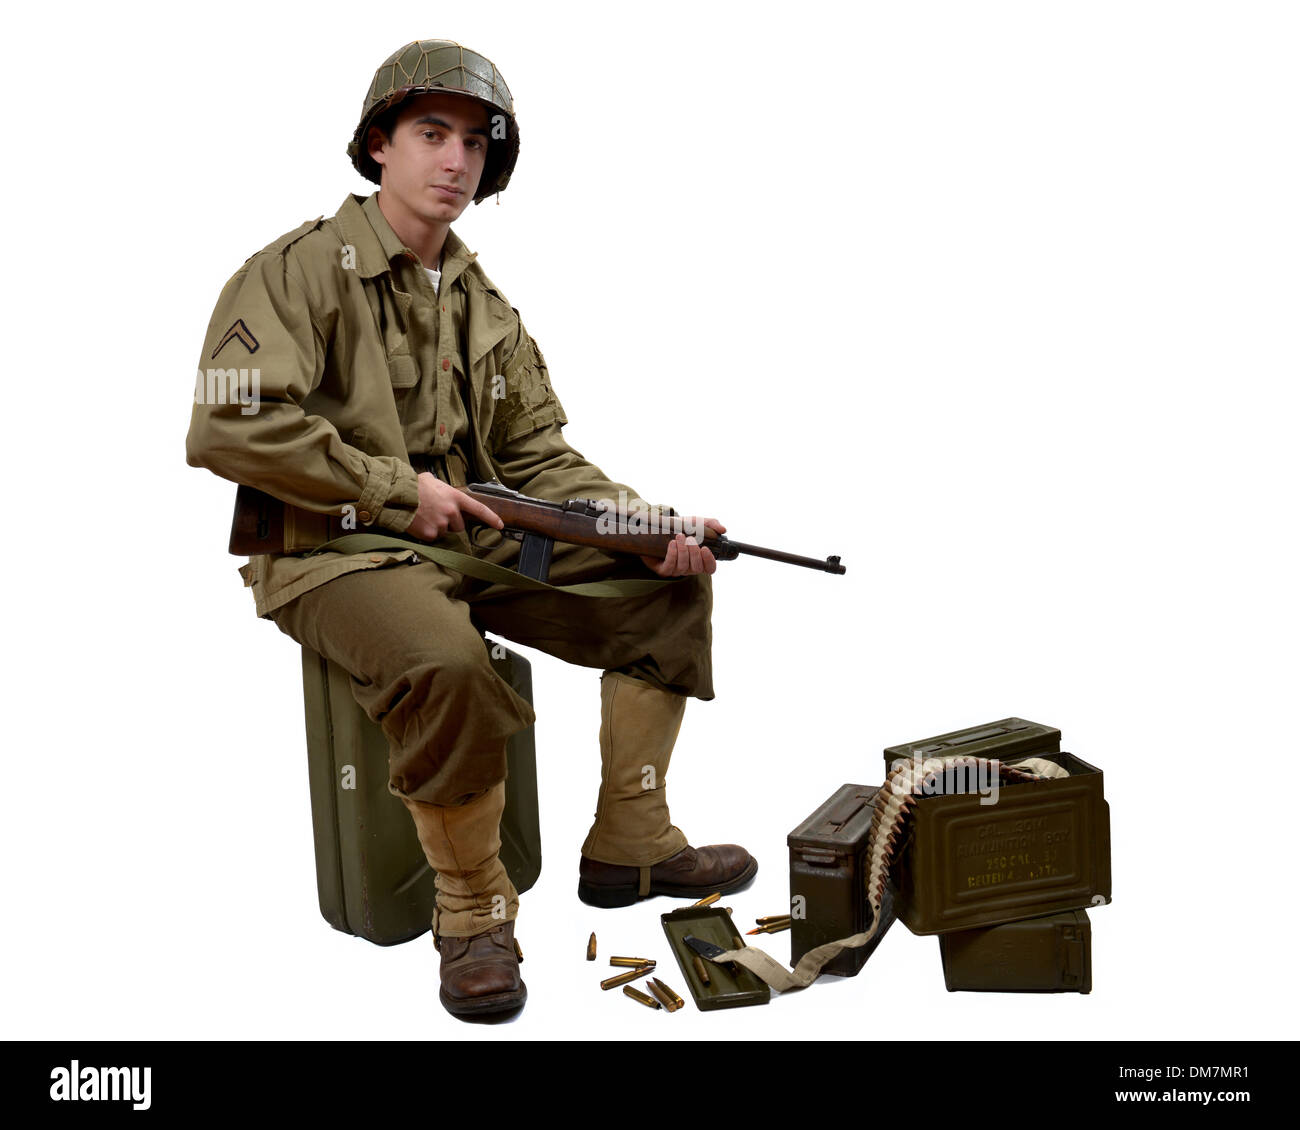 Jeune soldat américain et carabine M1 assis sur un bidon Banque D'Images